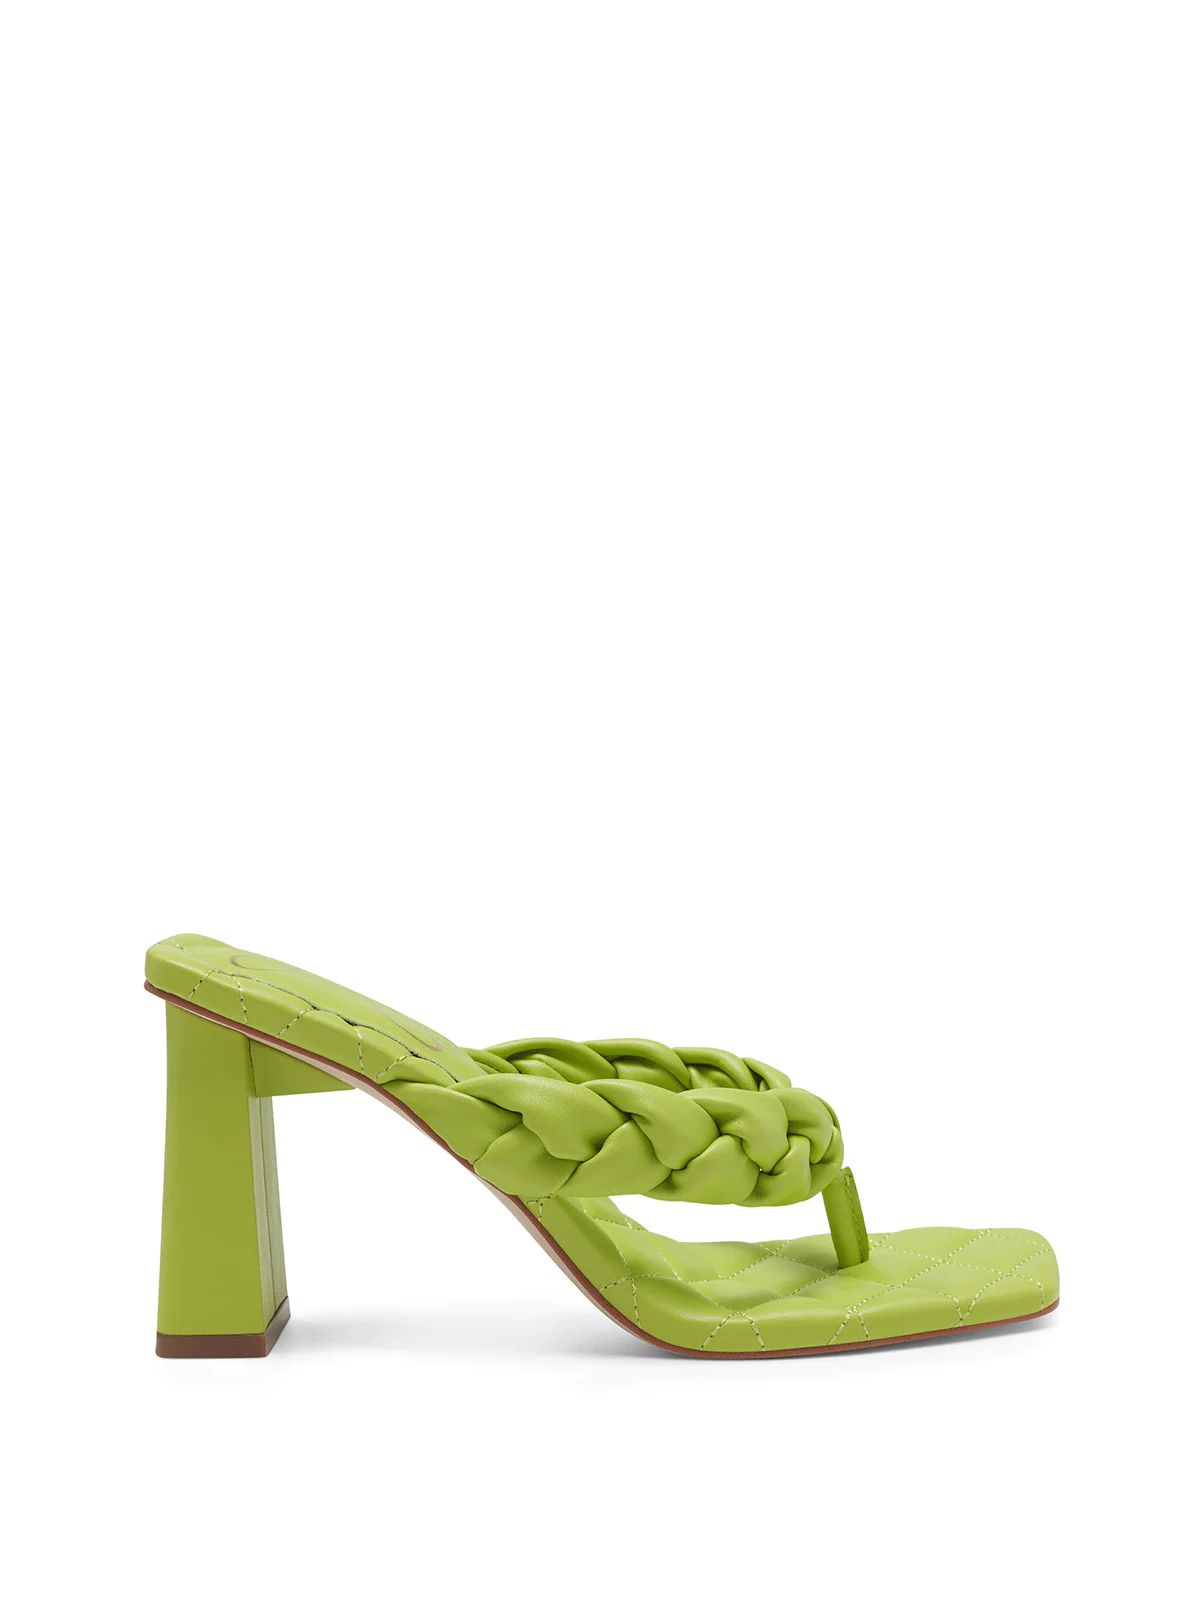 Zaliye High Heel Thong Sandal in Green | Jessica Simpson E Commerce